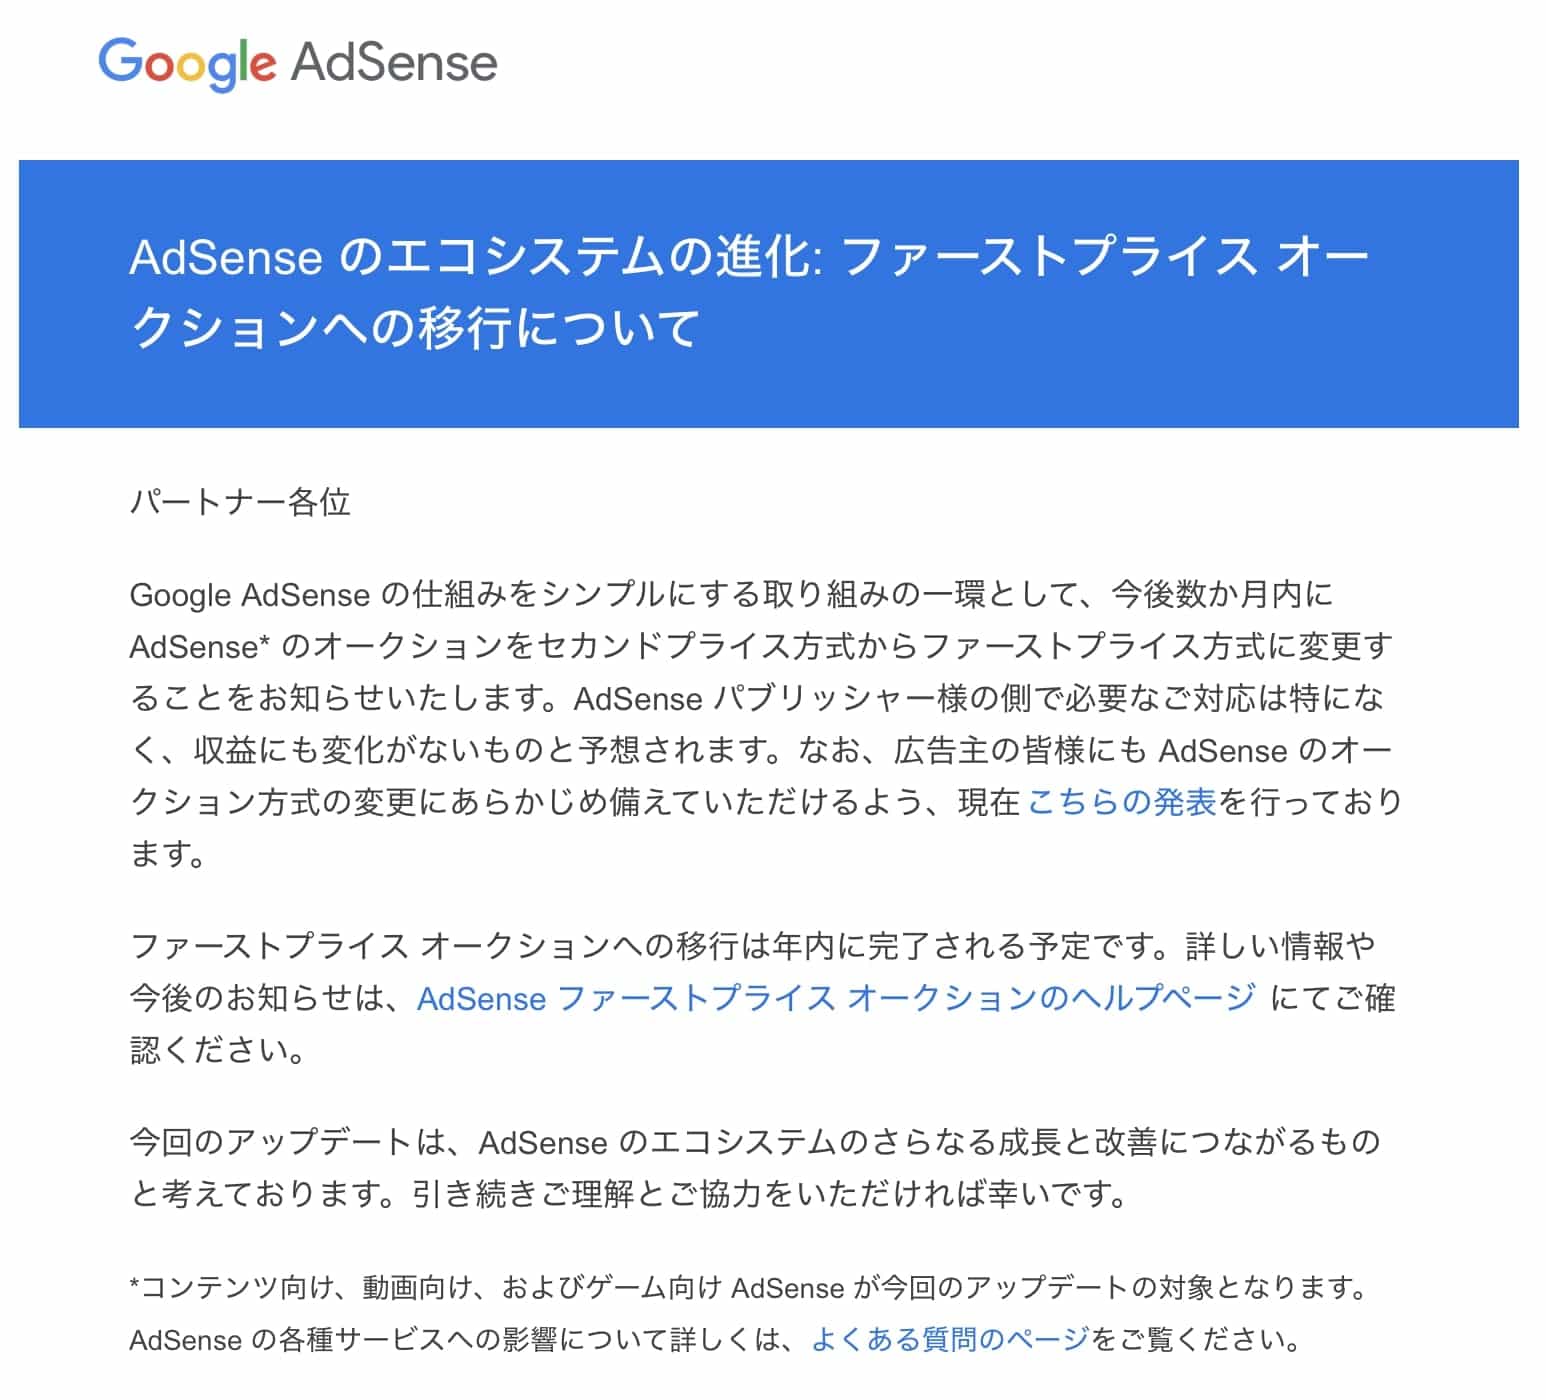 Google AdSense のエコシステムの進化:ファーストプライス オークションへの移行についてのメール